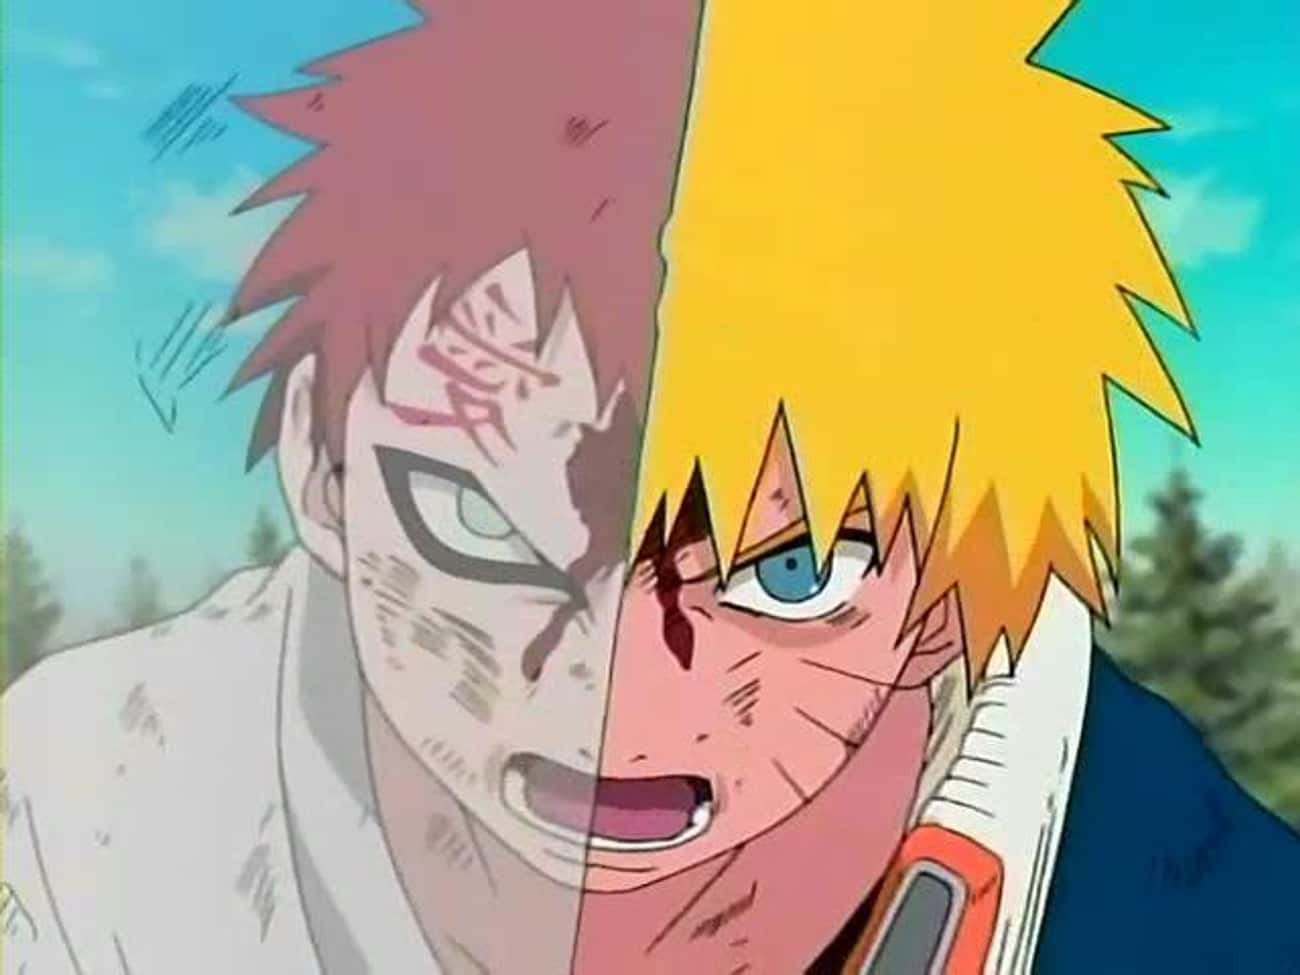 Naruto vs. Gaara